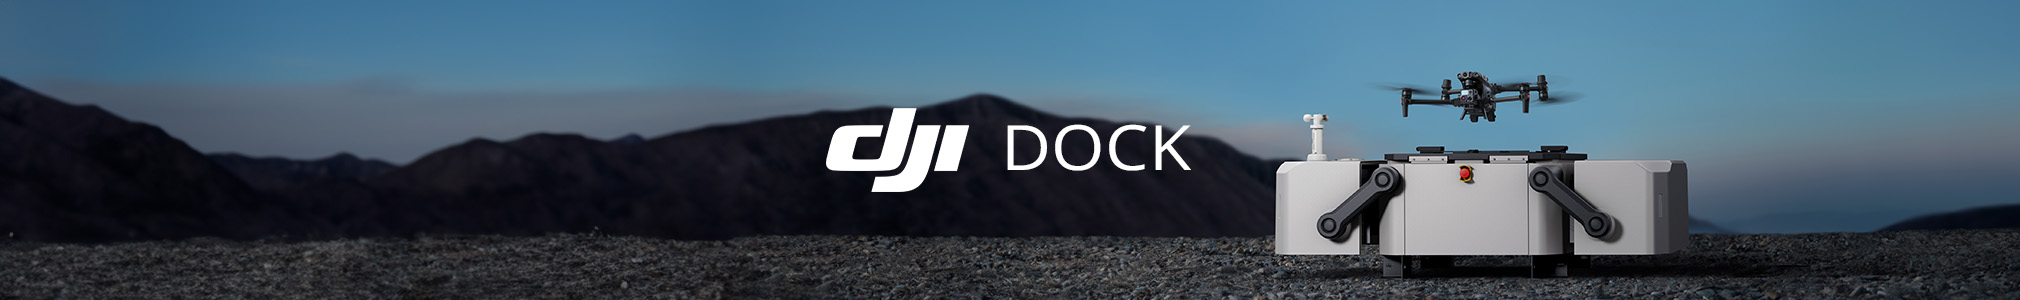 DJI-Dock